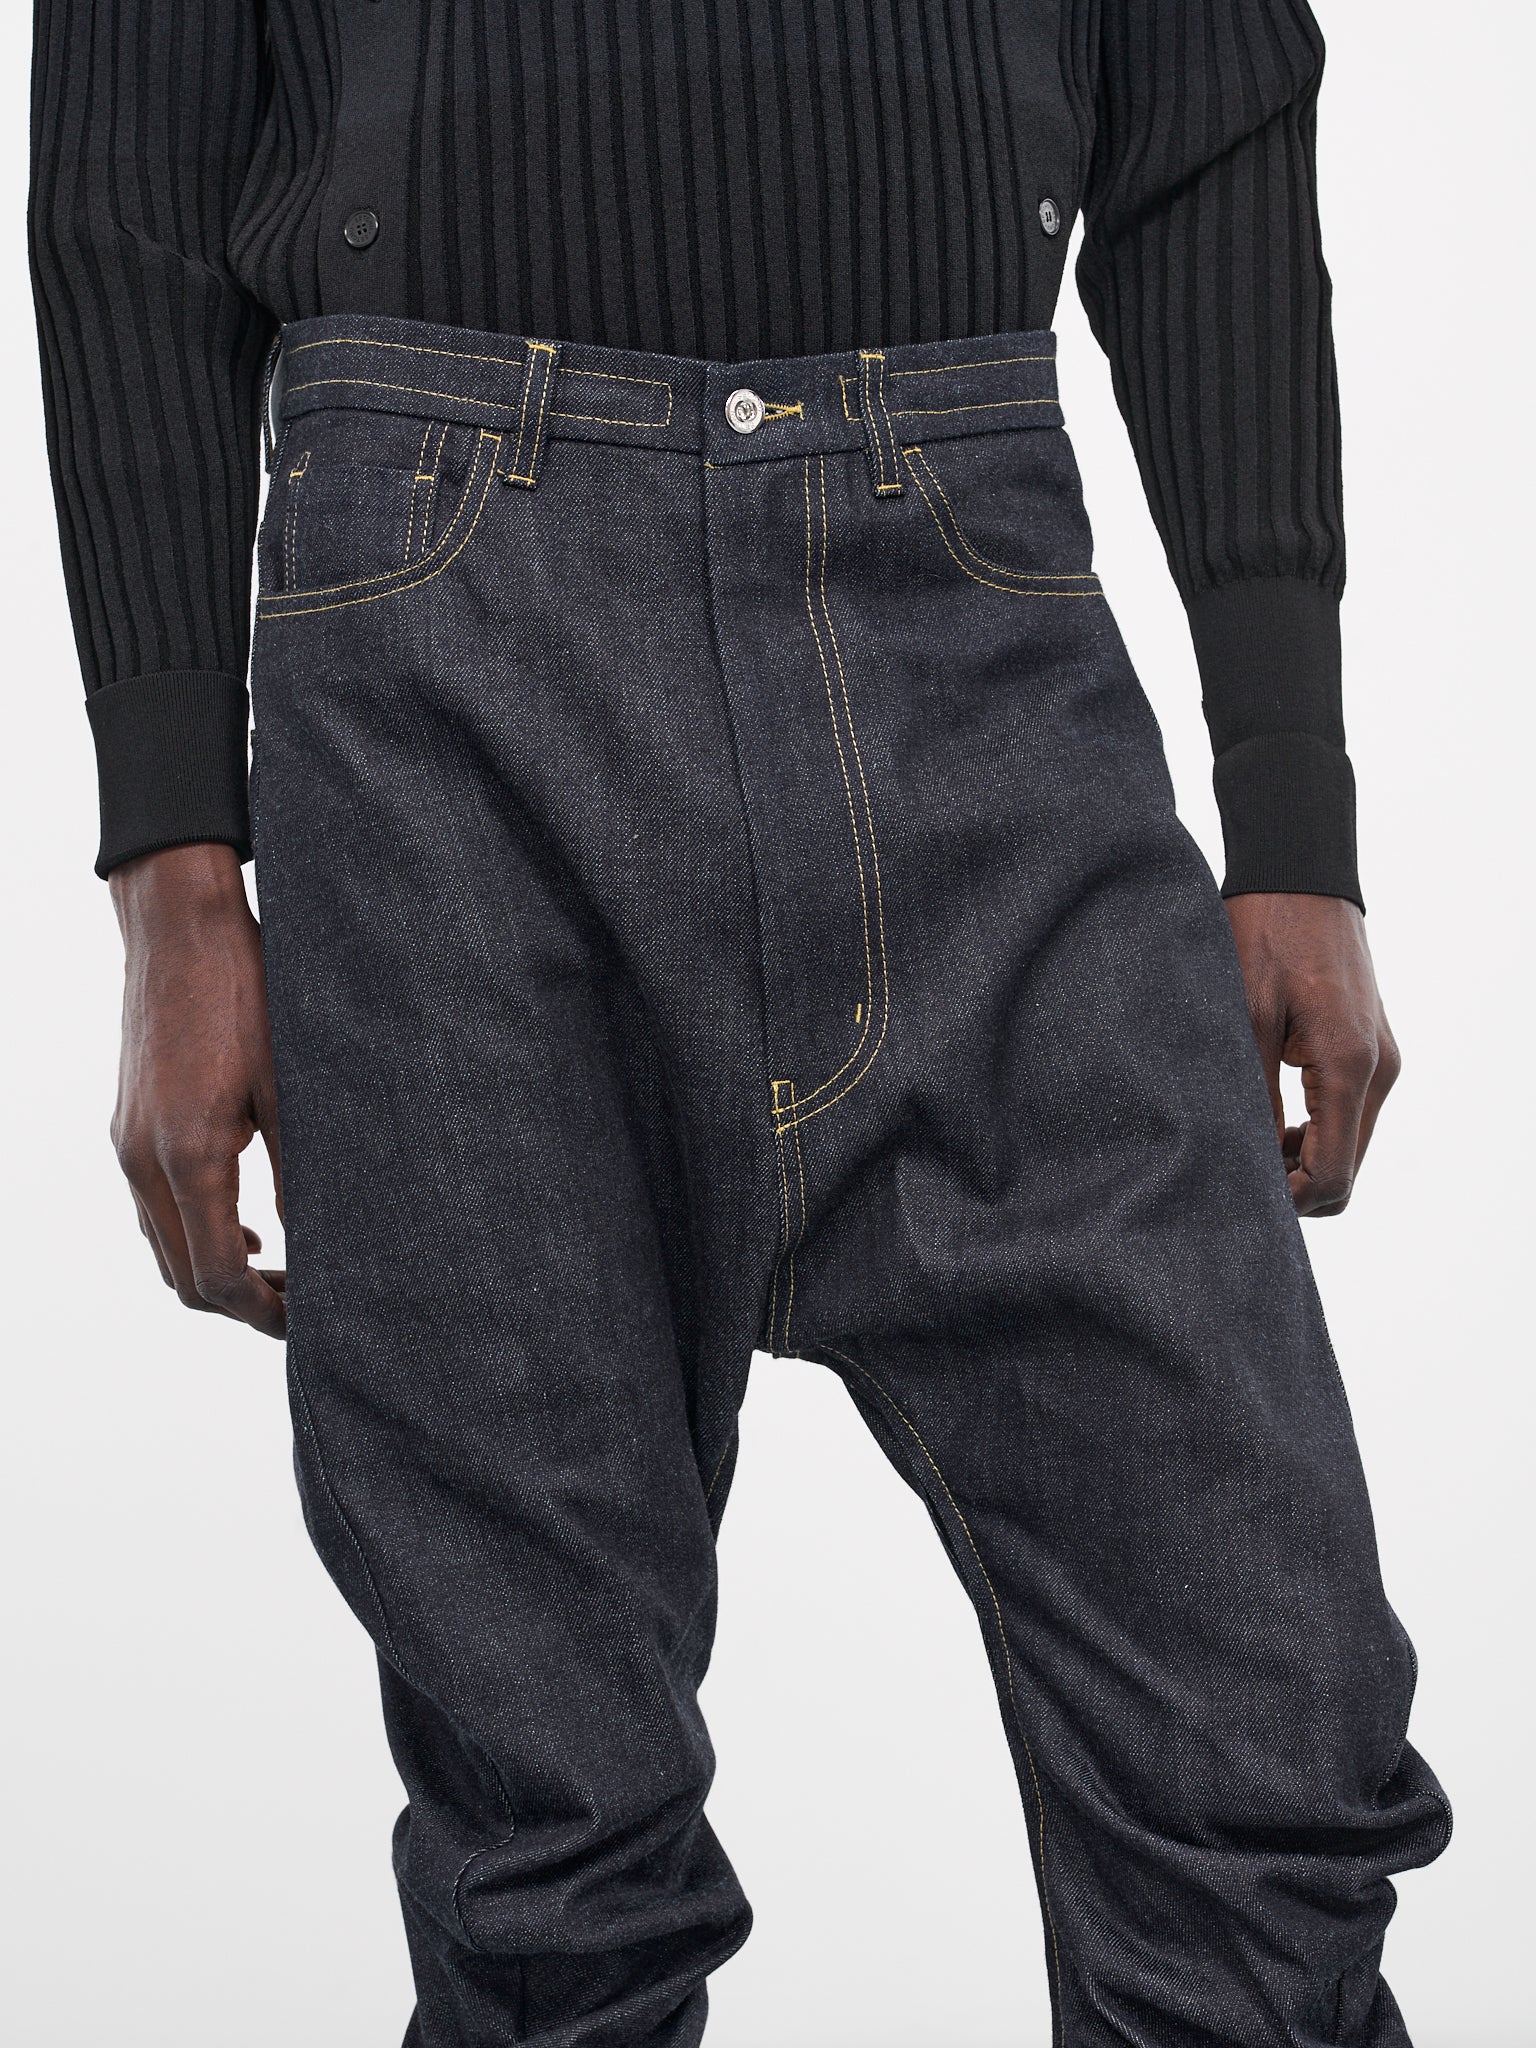 Maru Denim Jeans (P017-C011-INDIGO)